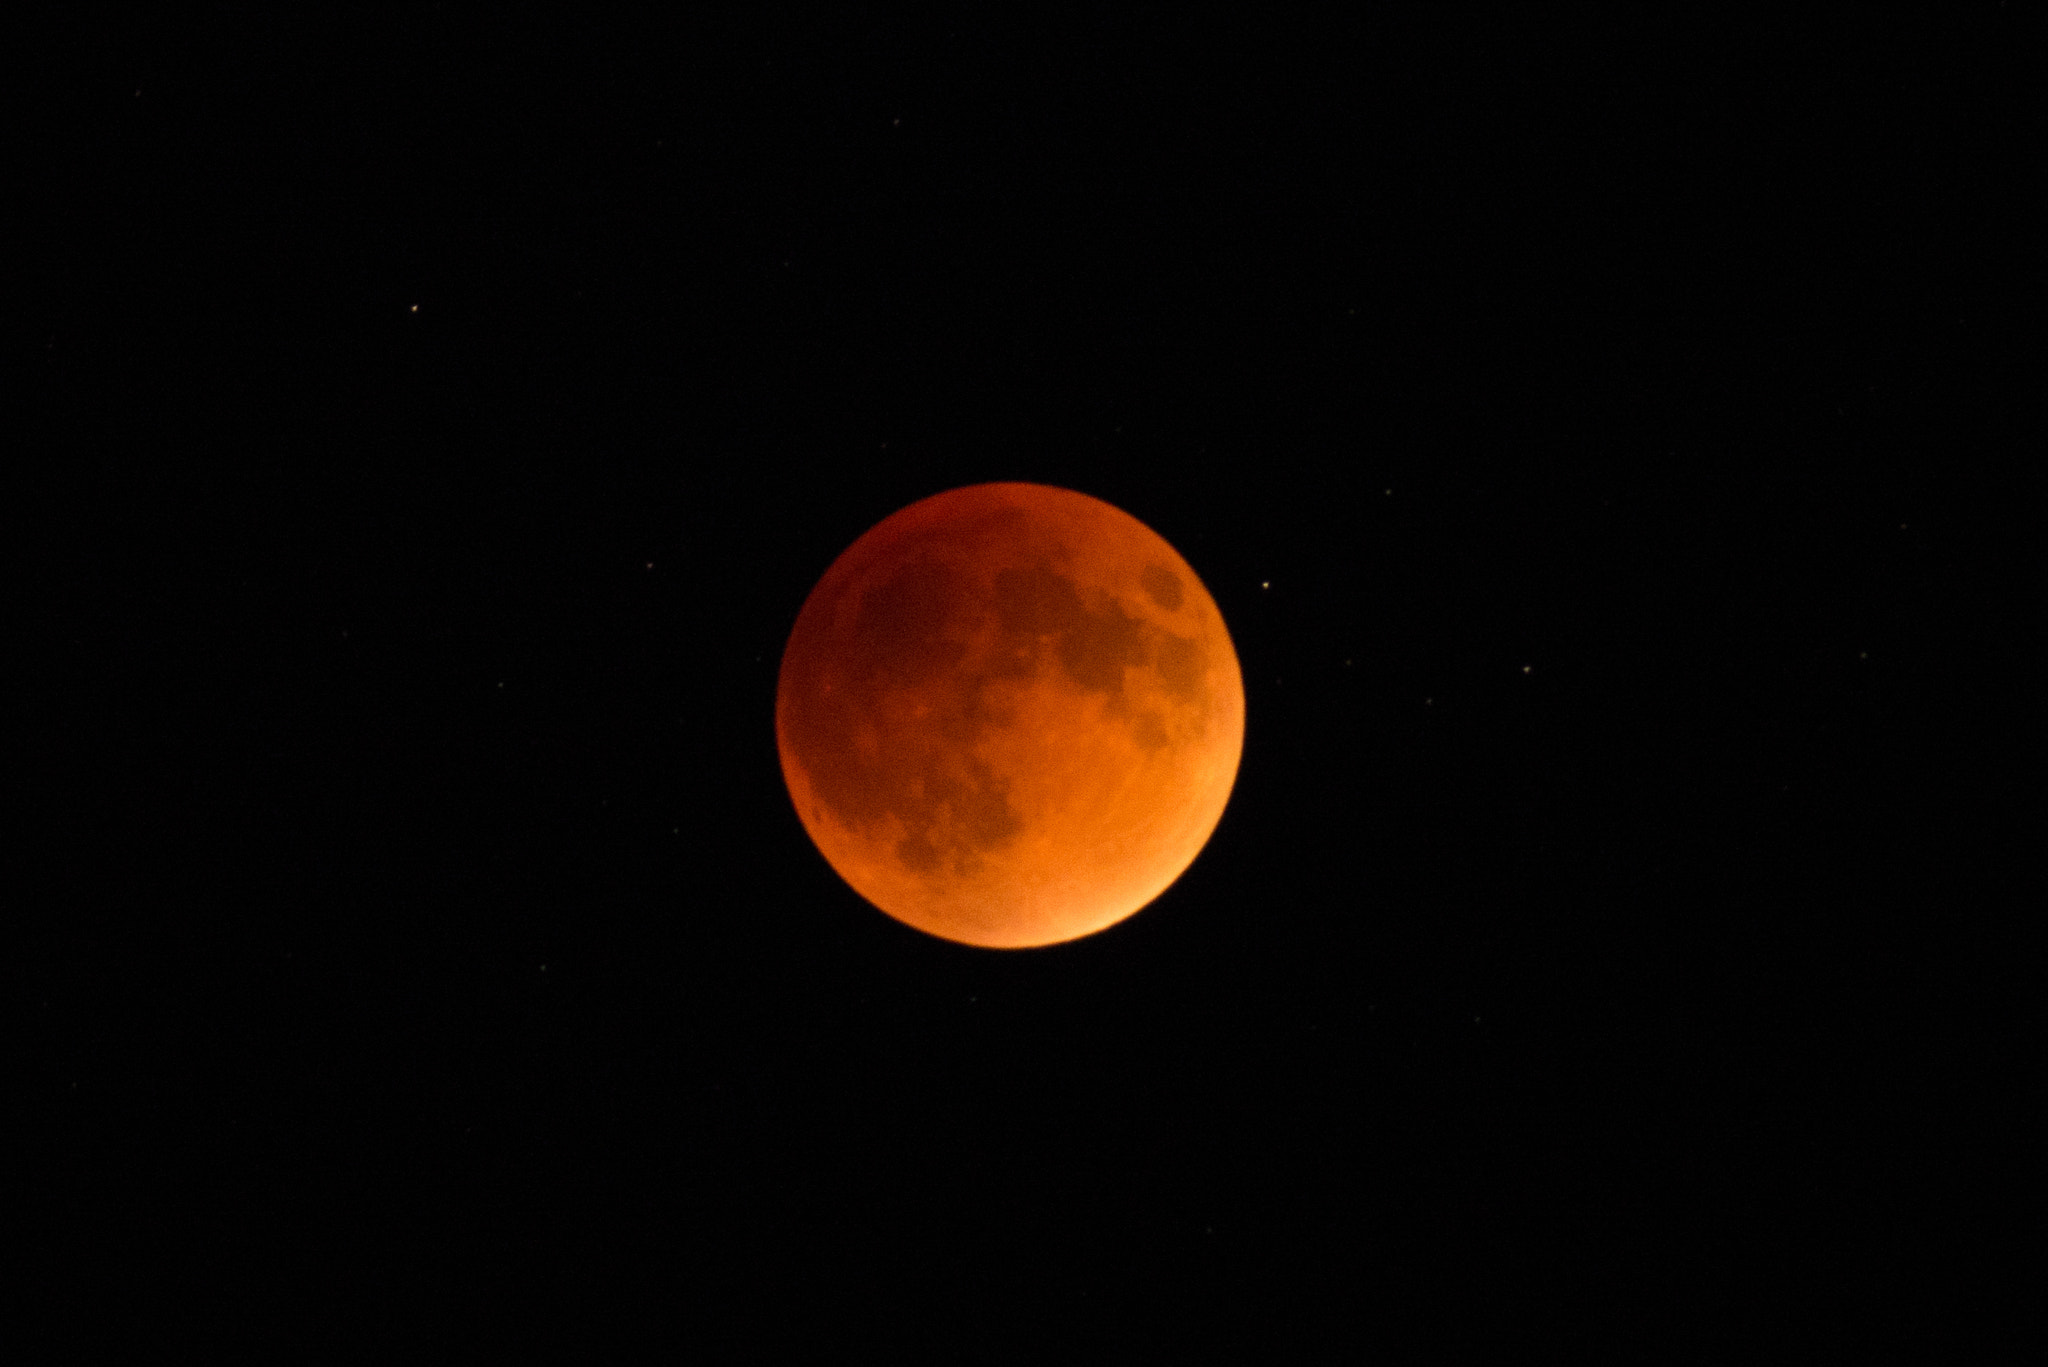 Tokina AT-X 400 AF SD (AF 400mm f/5.6) sample photo. Blood super moon 2016 photography